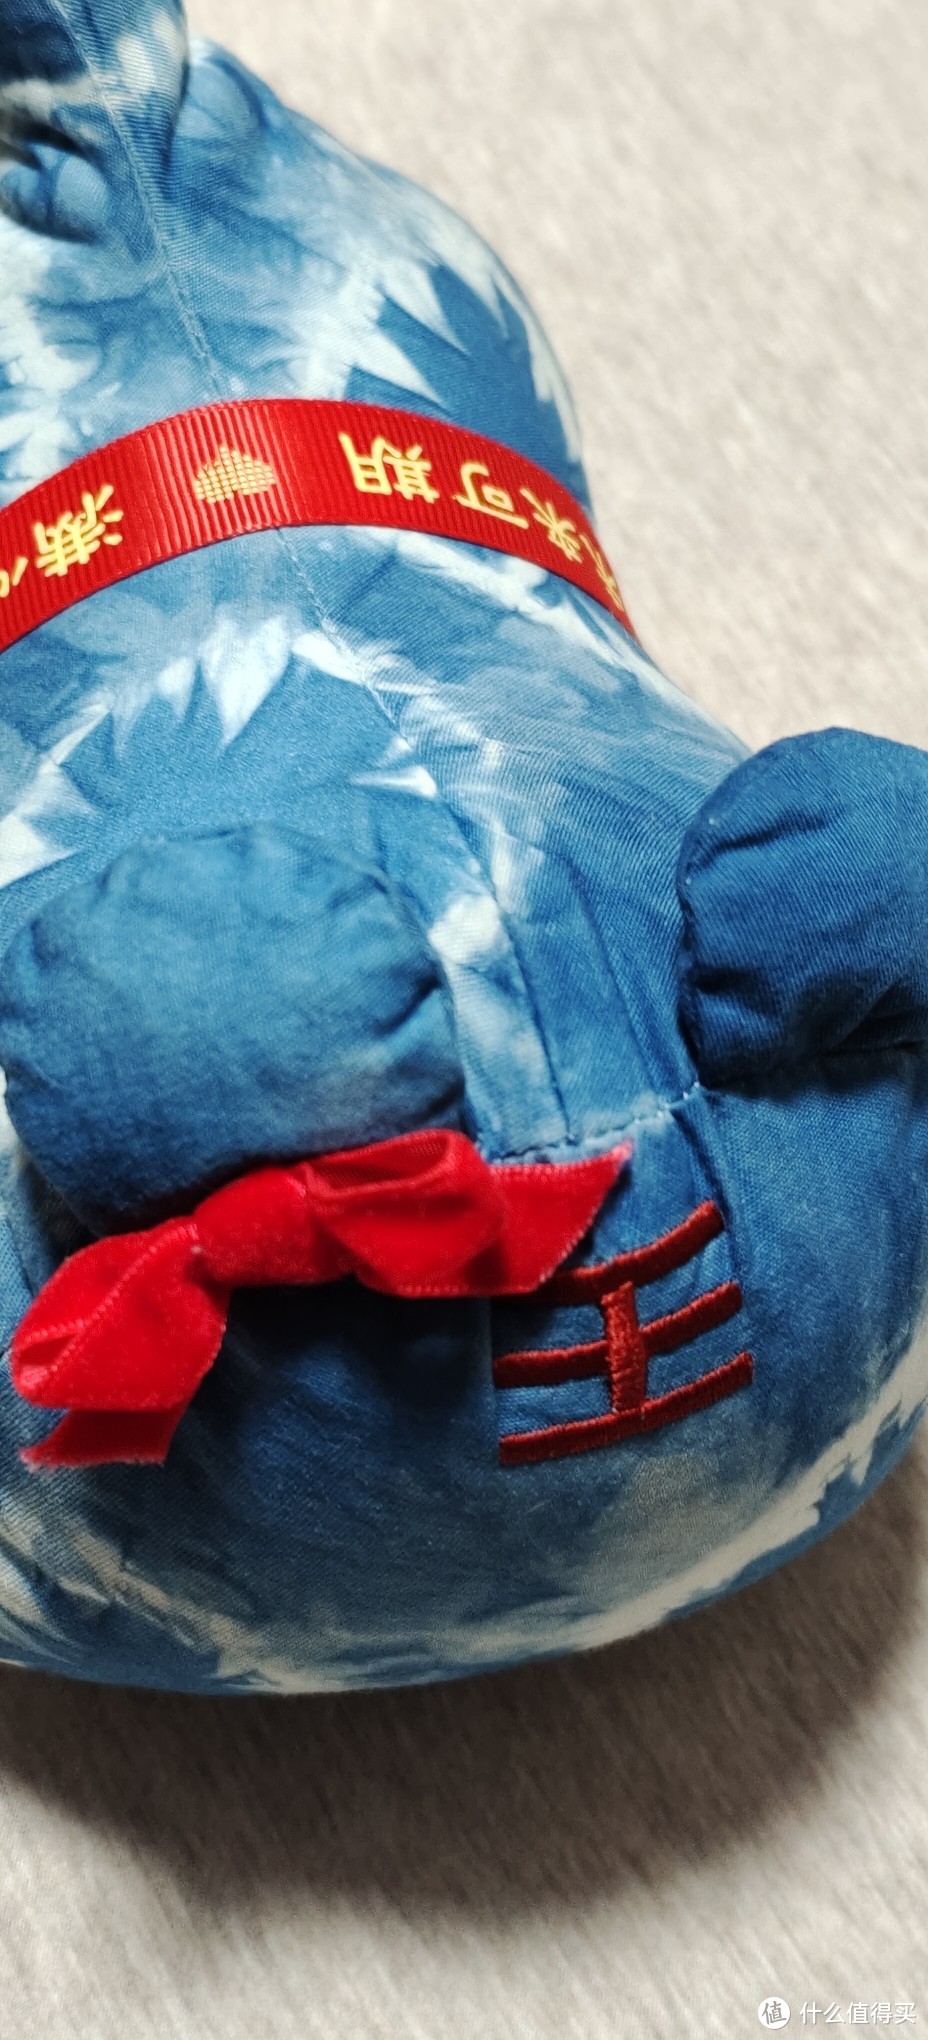 黄道婆纪念馆制作活动游园/体验一下什么是手工染布/上海旅游纪念馆手工制作天然染料布偶